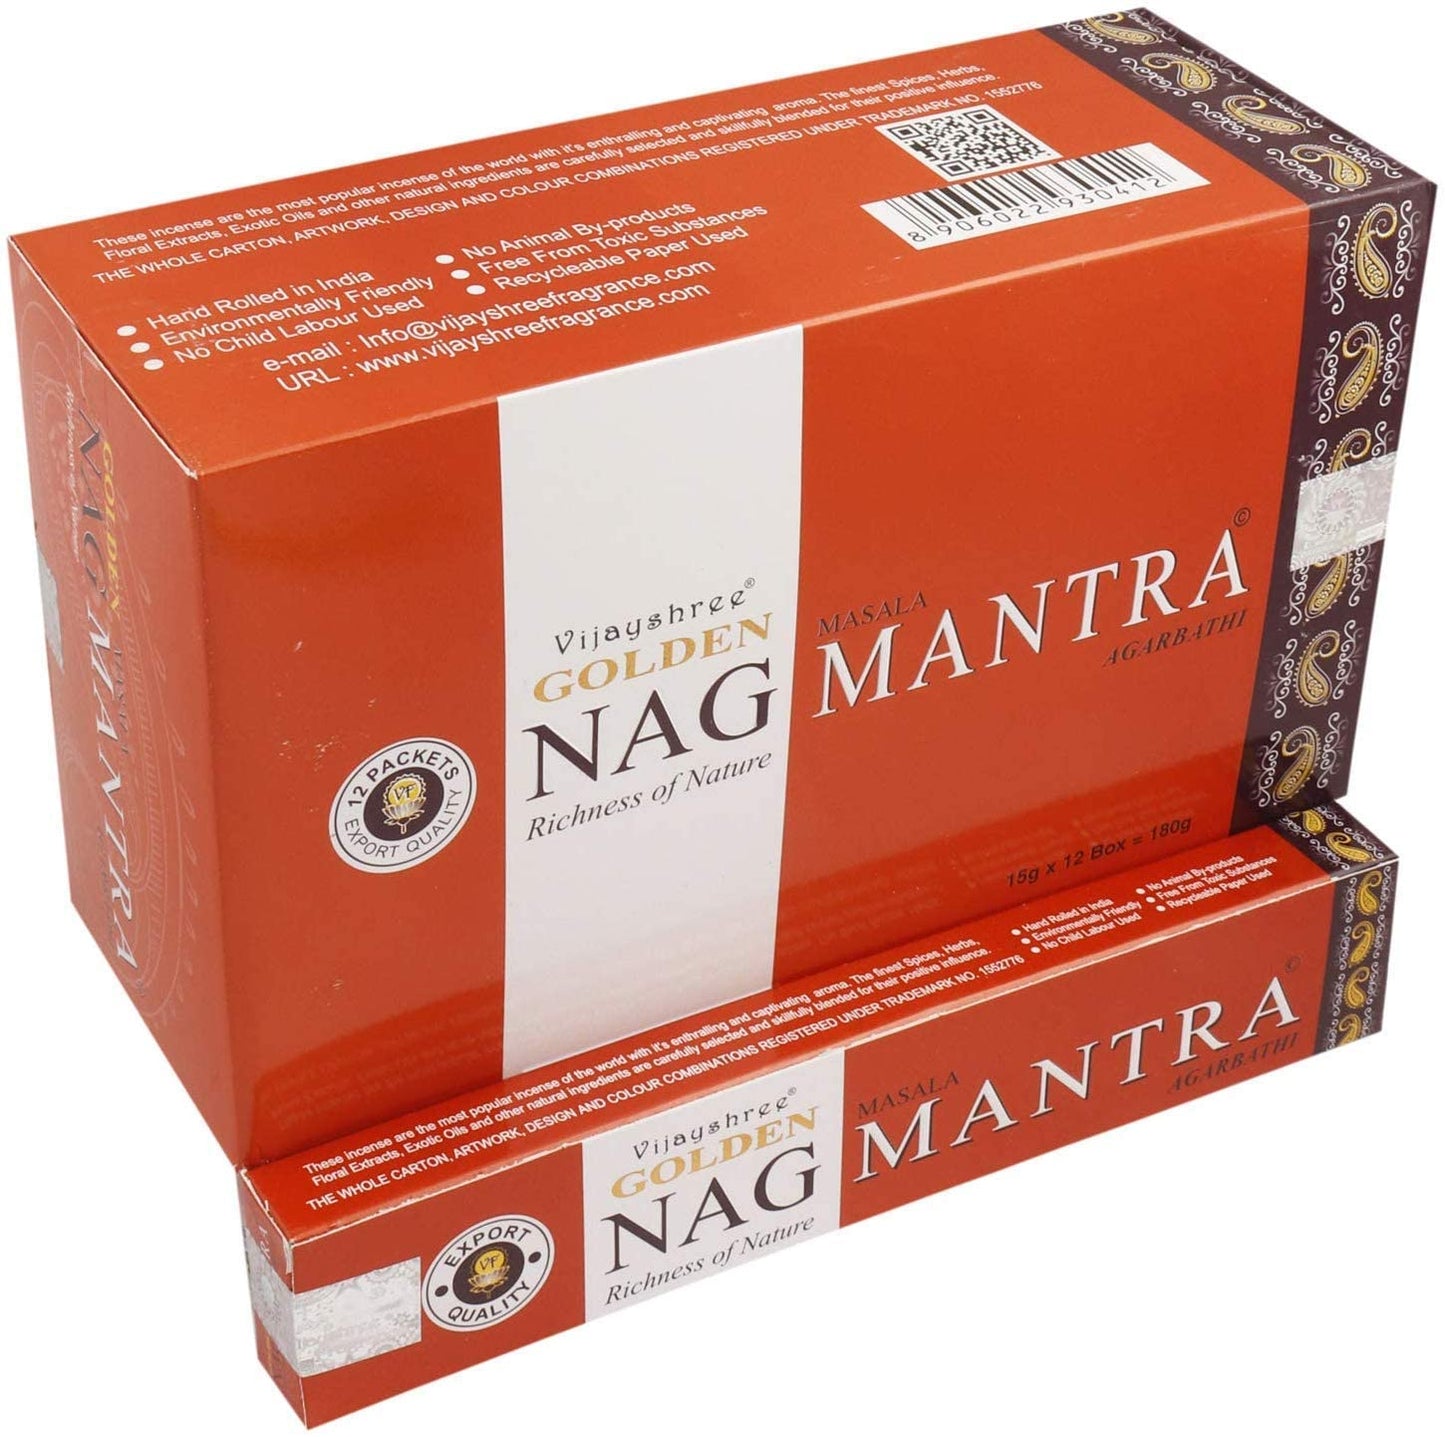 Golden Nag Mantra - Ihr Weg zur inneren Harmonie und Entspannung